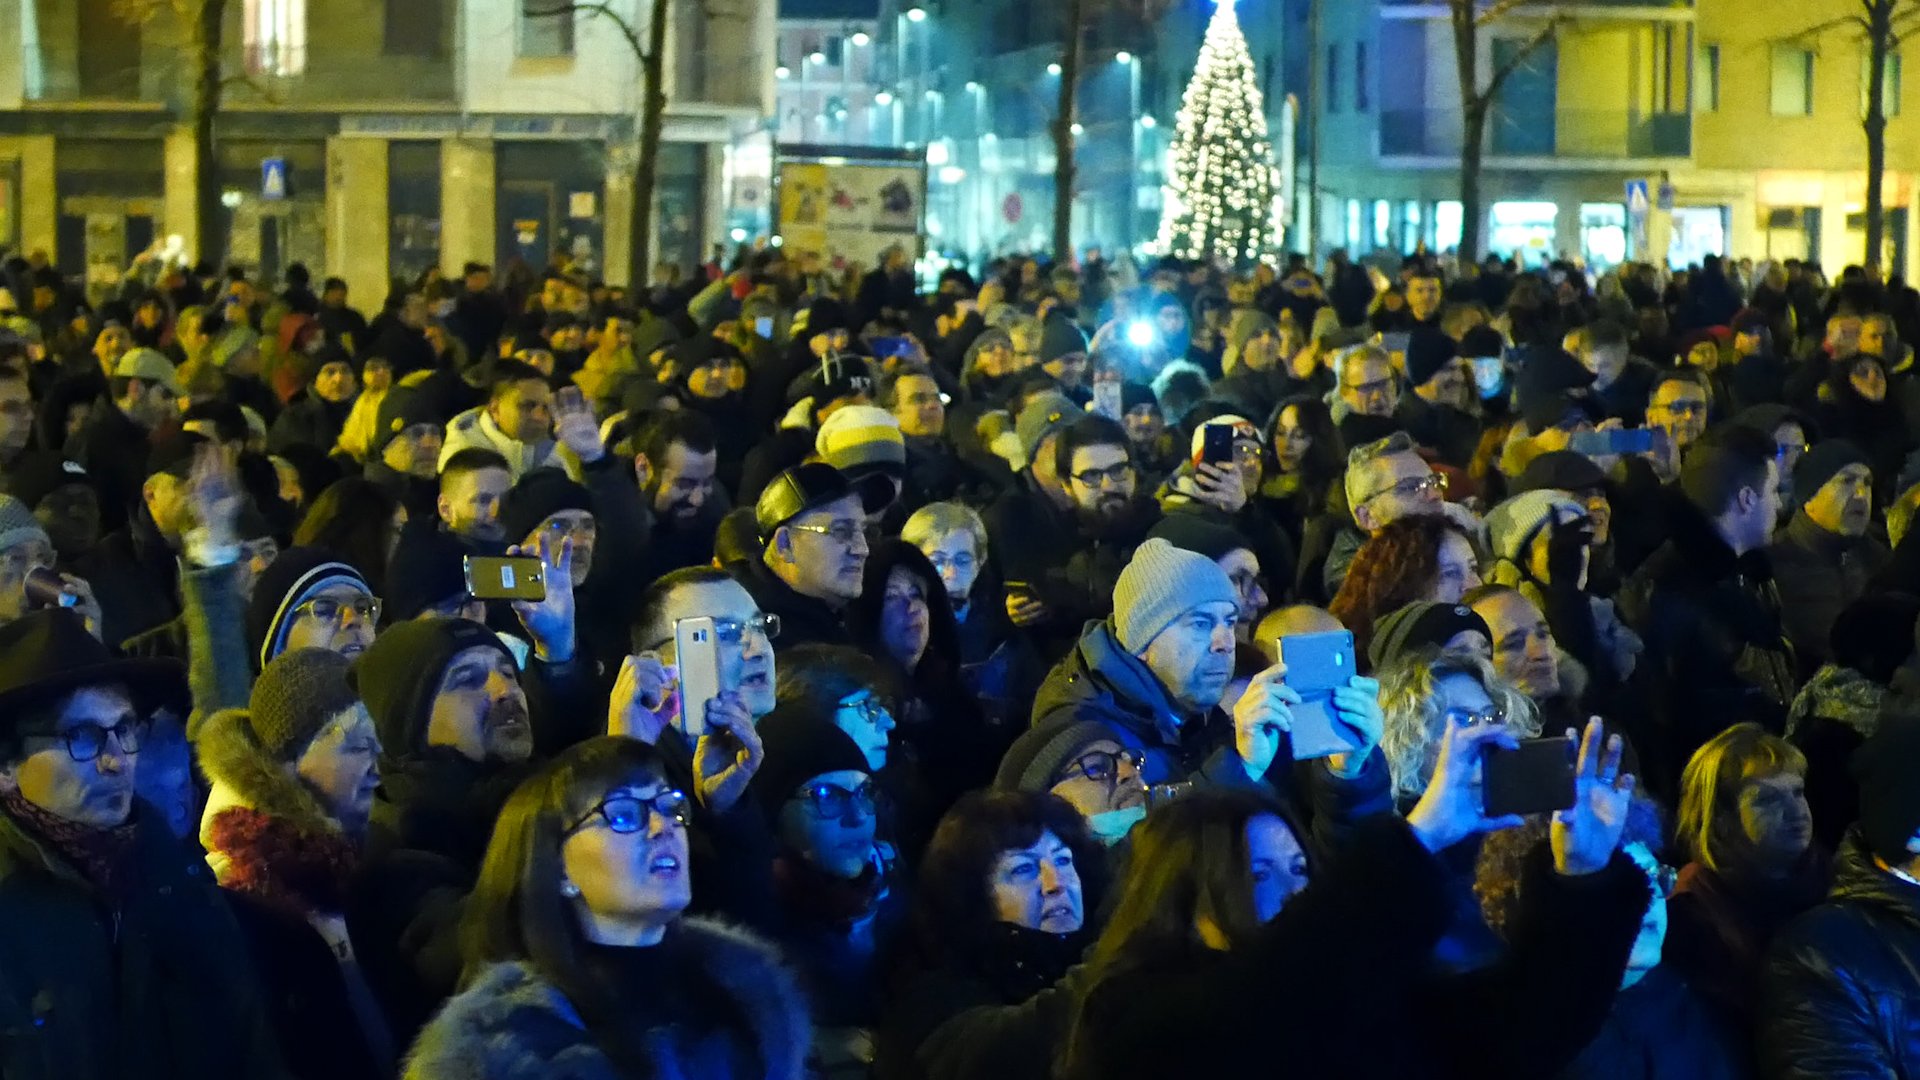 Capodanno ad Alessandria: tanta gente in piazza per salutare il 2019